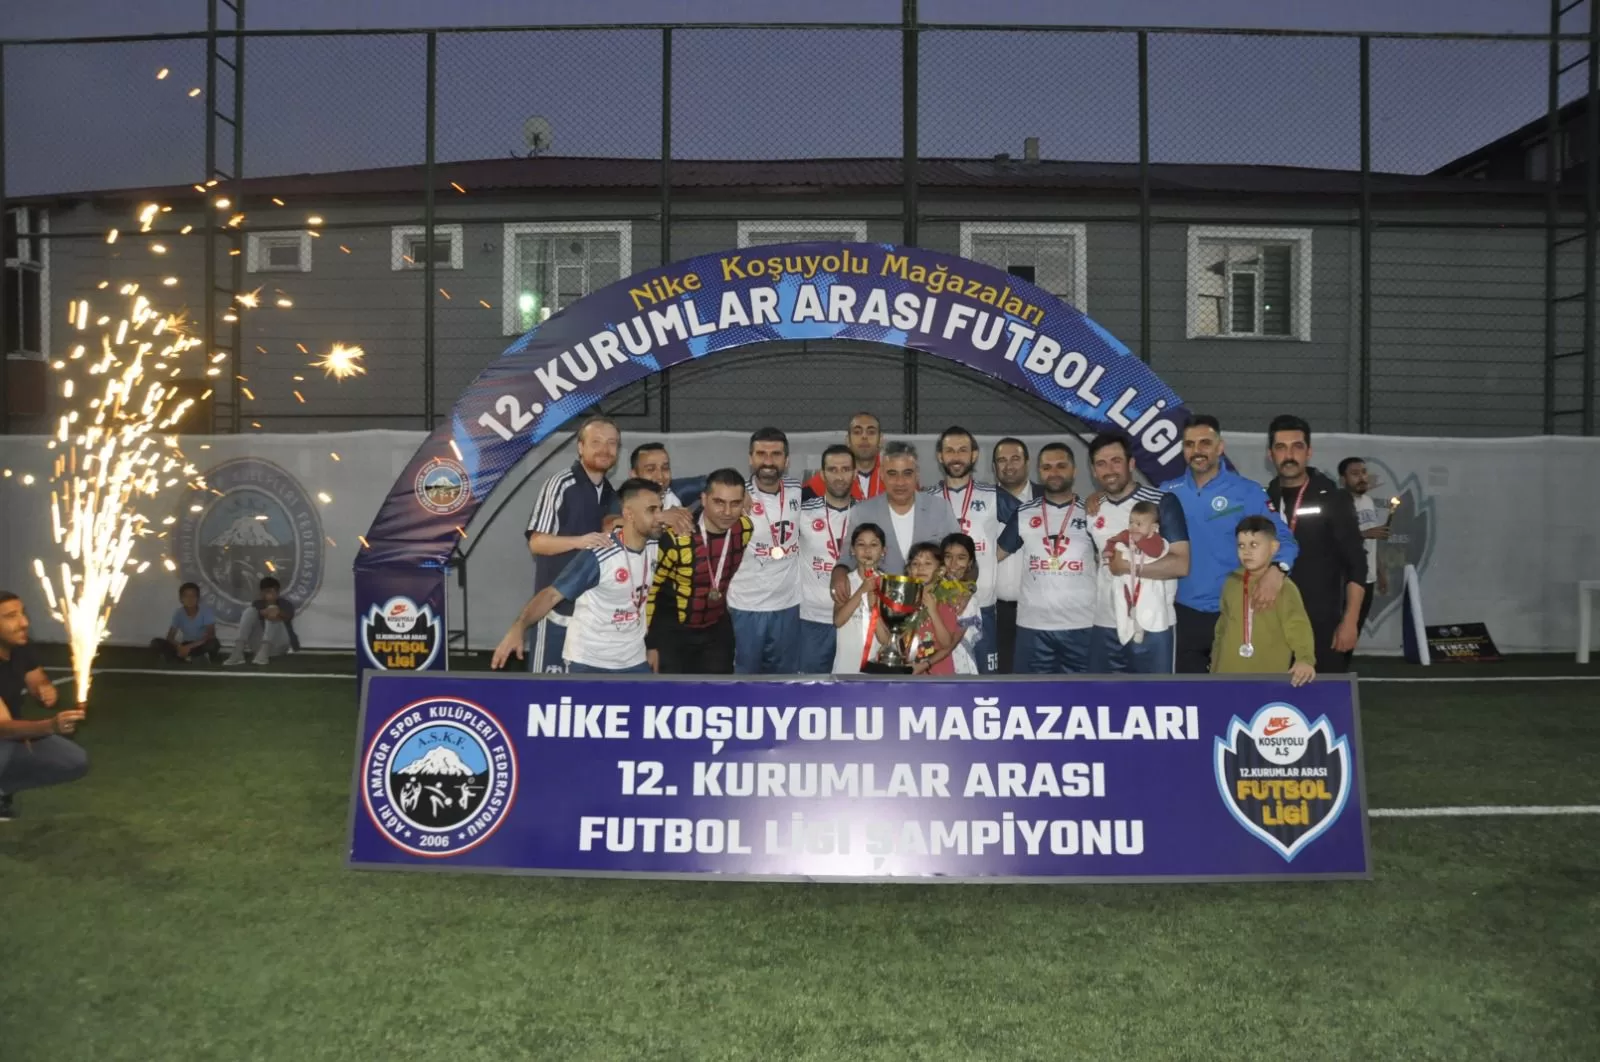 12’nci Kurumlar Arası Futbol Ligi Şampiyonu belli oldu!